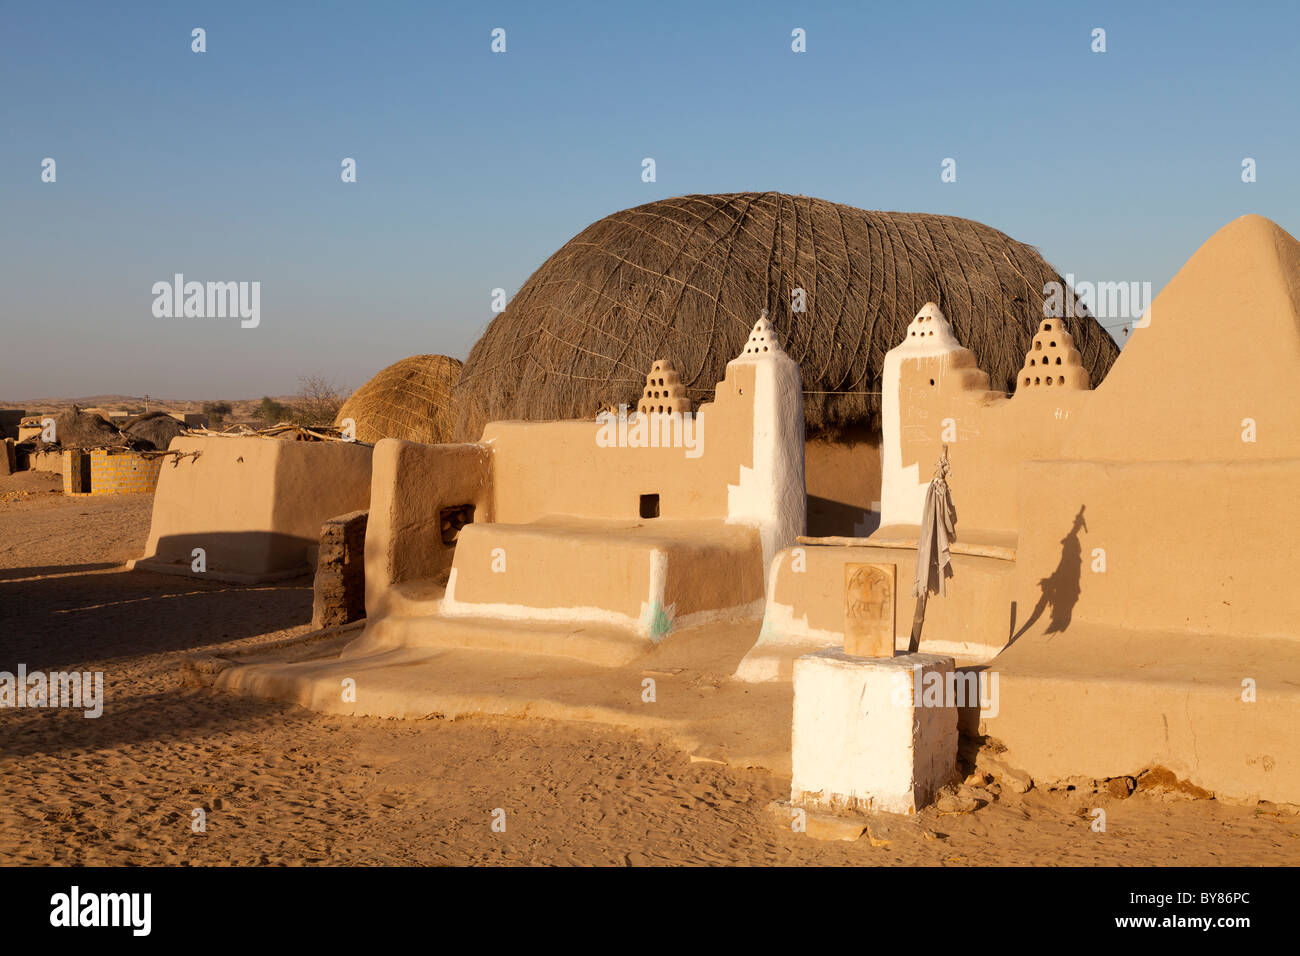 India Rajasthan, deserto di Thar, deserto tradizionale home Foto Stock